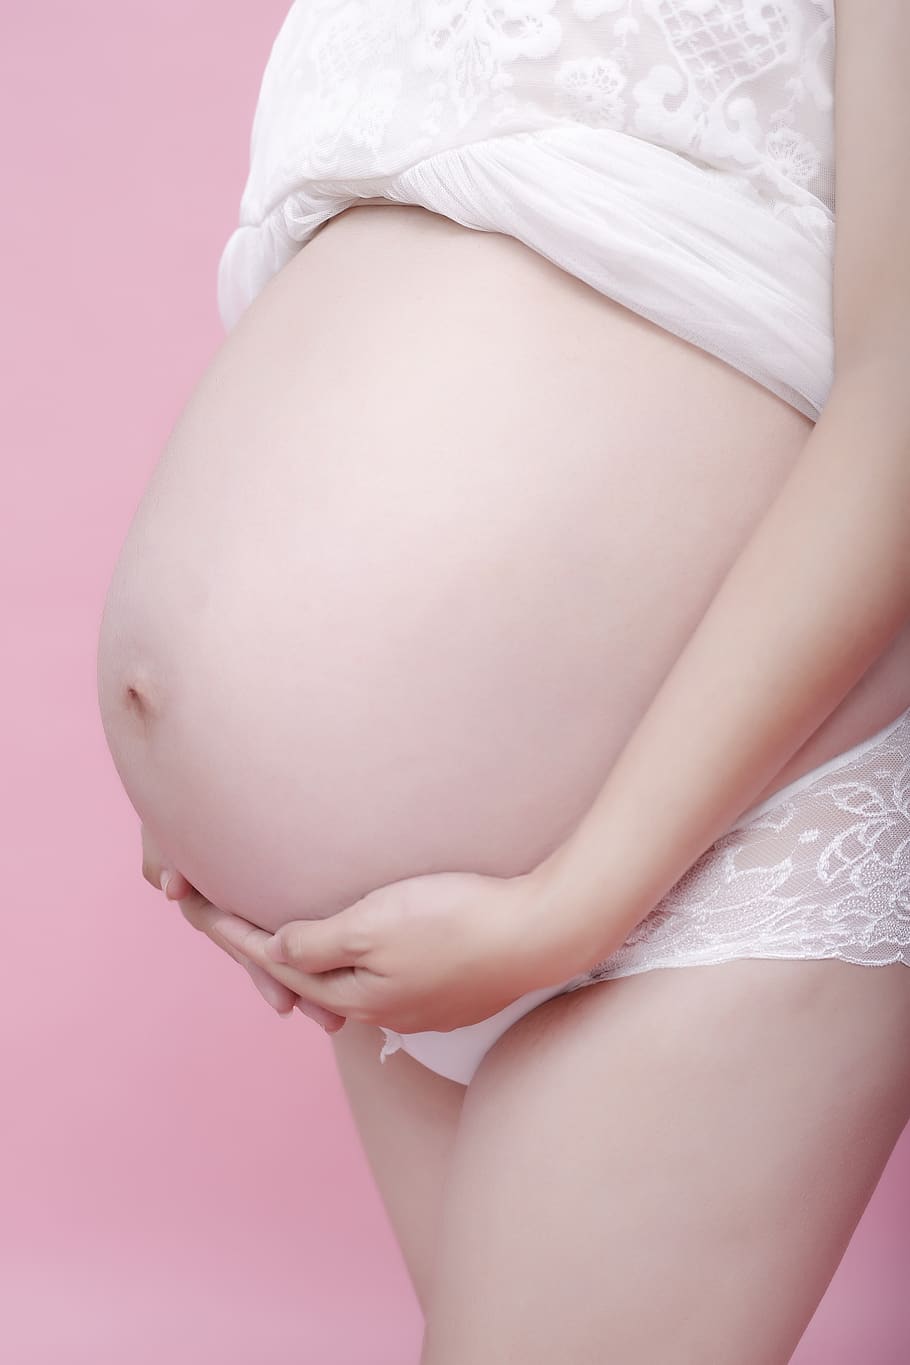 mulheres grávidas, mulher, barriga, grávida, parte do corpo humano, início, parte do meio, parte do corpo, foto de estúdio, abdômen humano